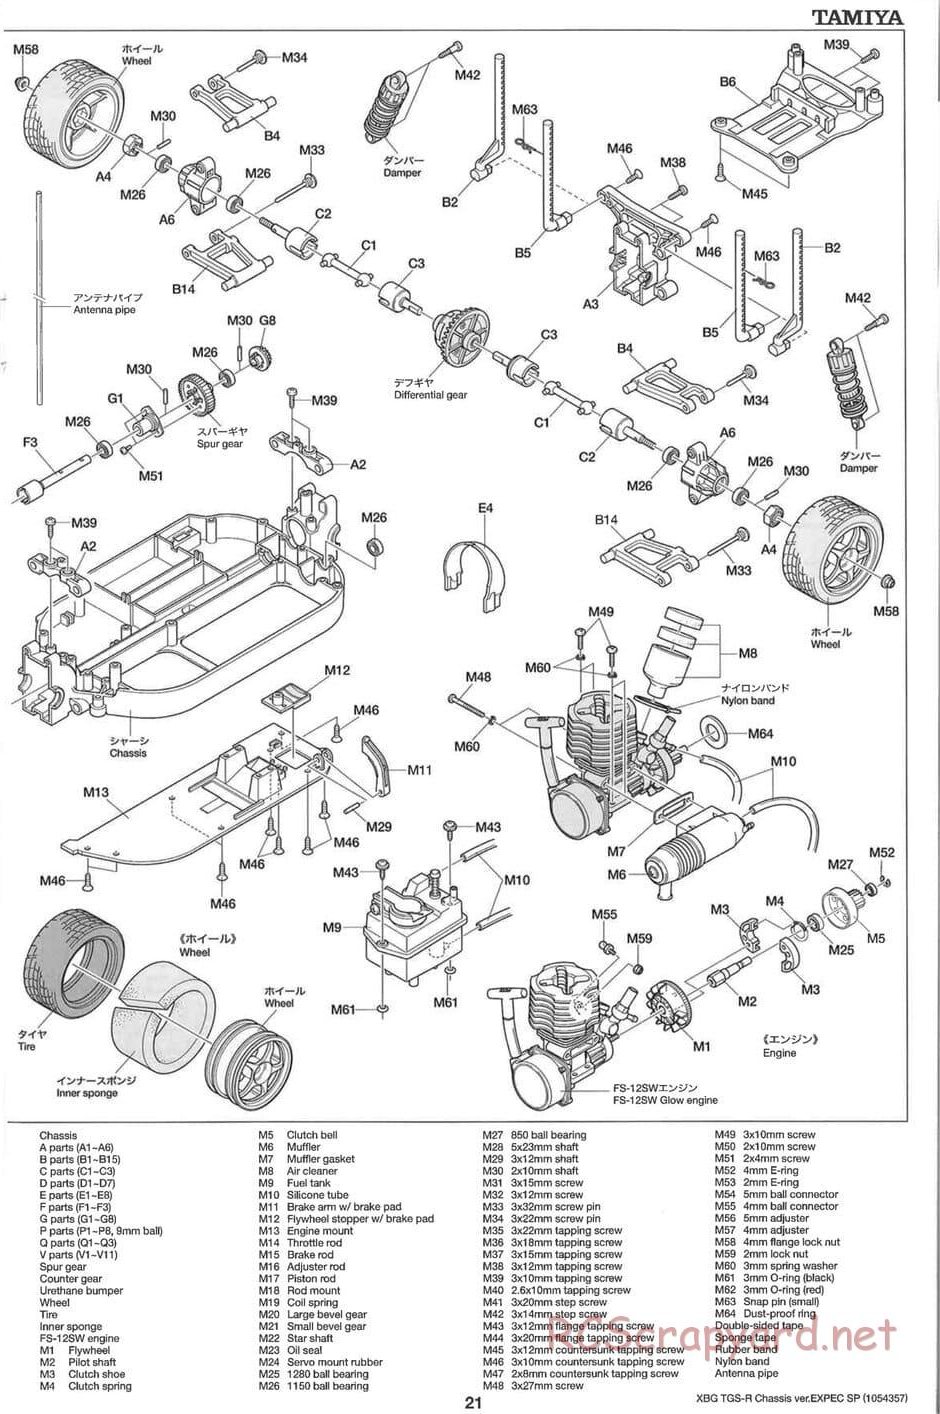 Tamiya - TGS-R Chassis - Manual - Page 21